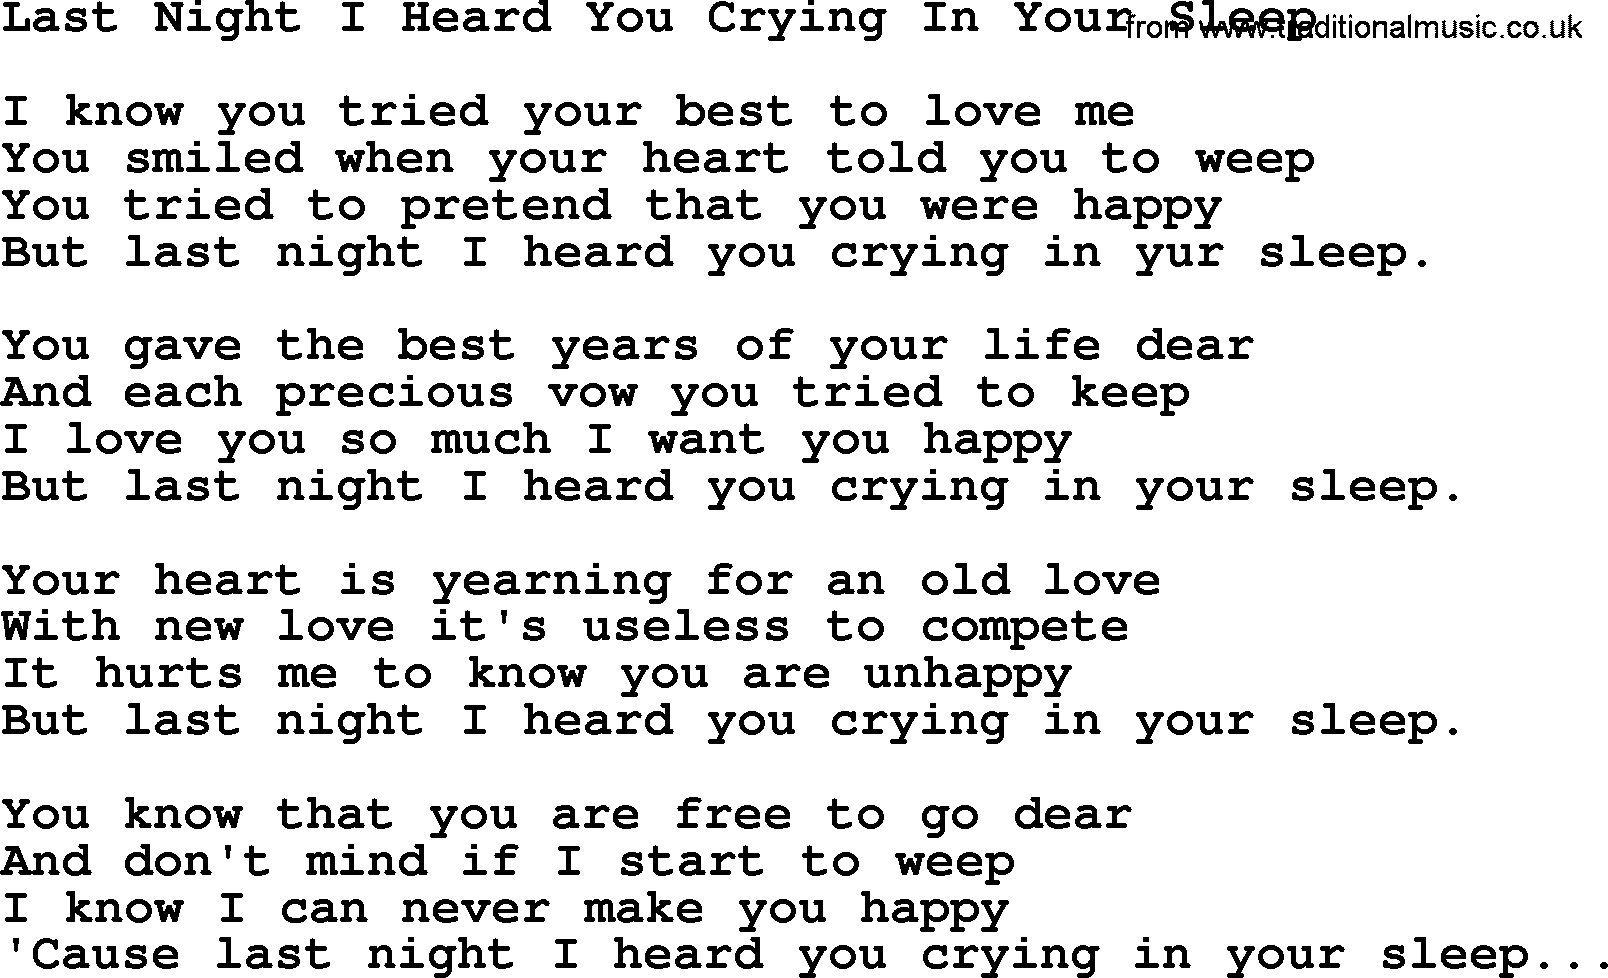 Hank Williams song Last Night I Heard You Crying In Your Sleep, lyrics